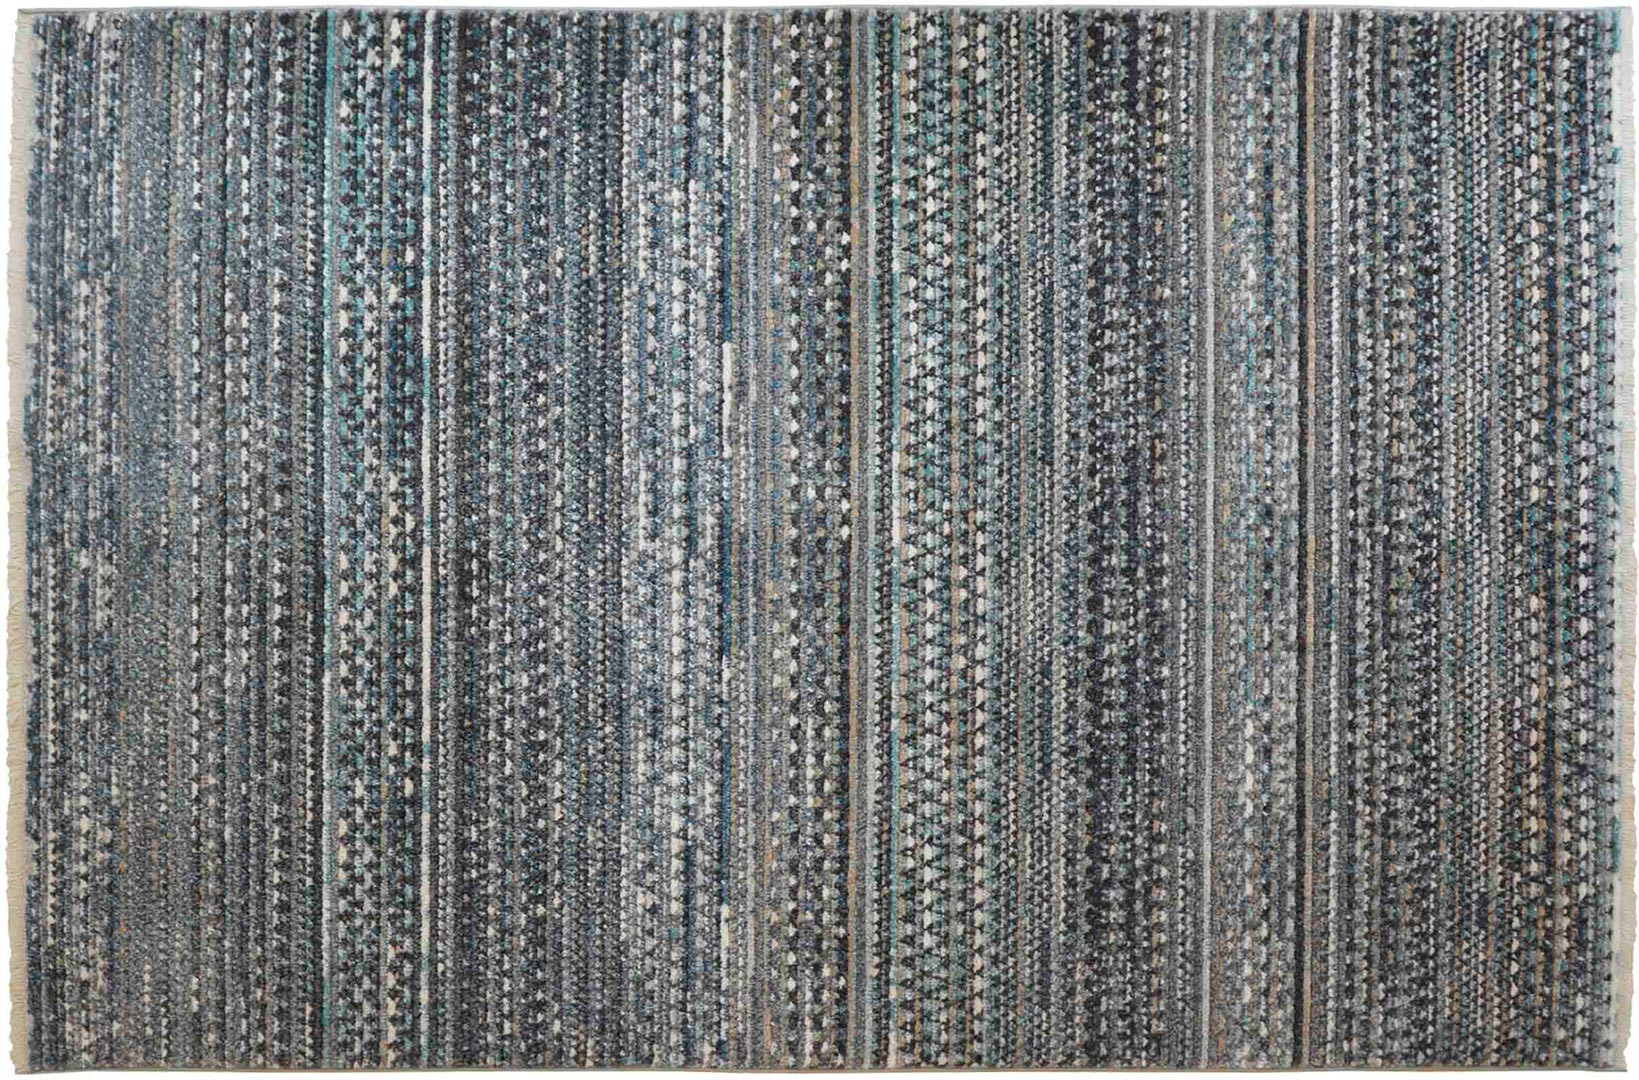 Paillasson bleu en coton tapis intérieur extérieur sur latex